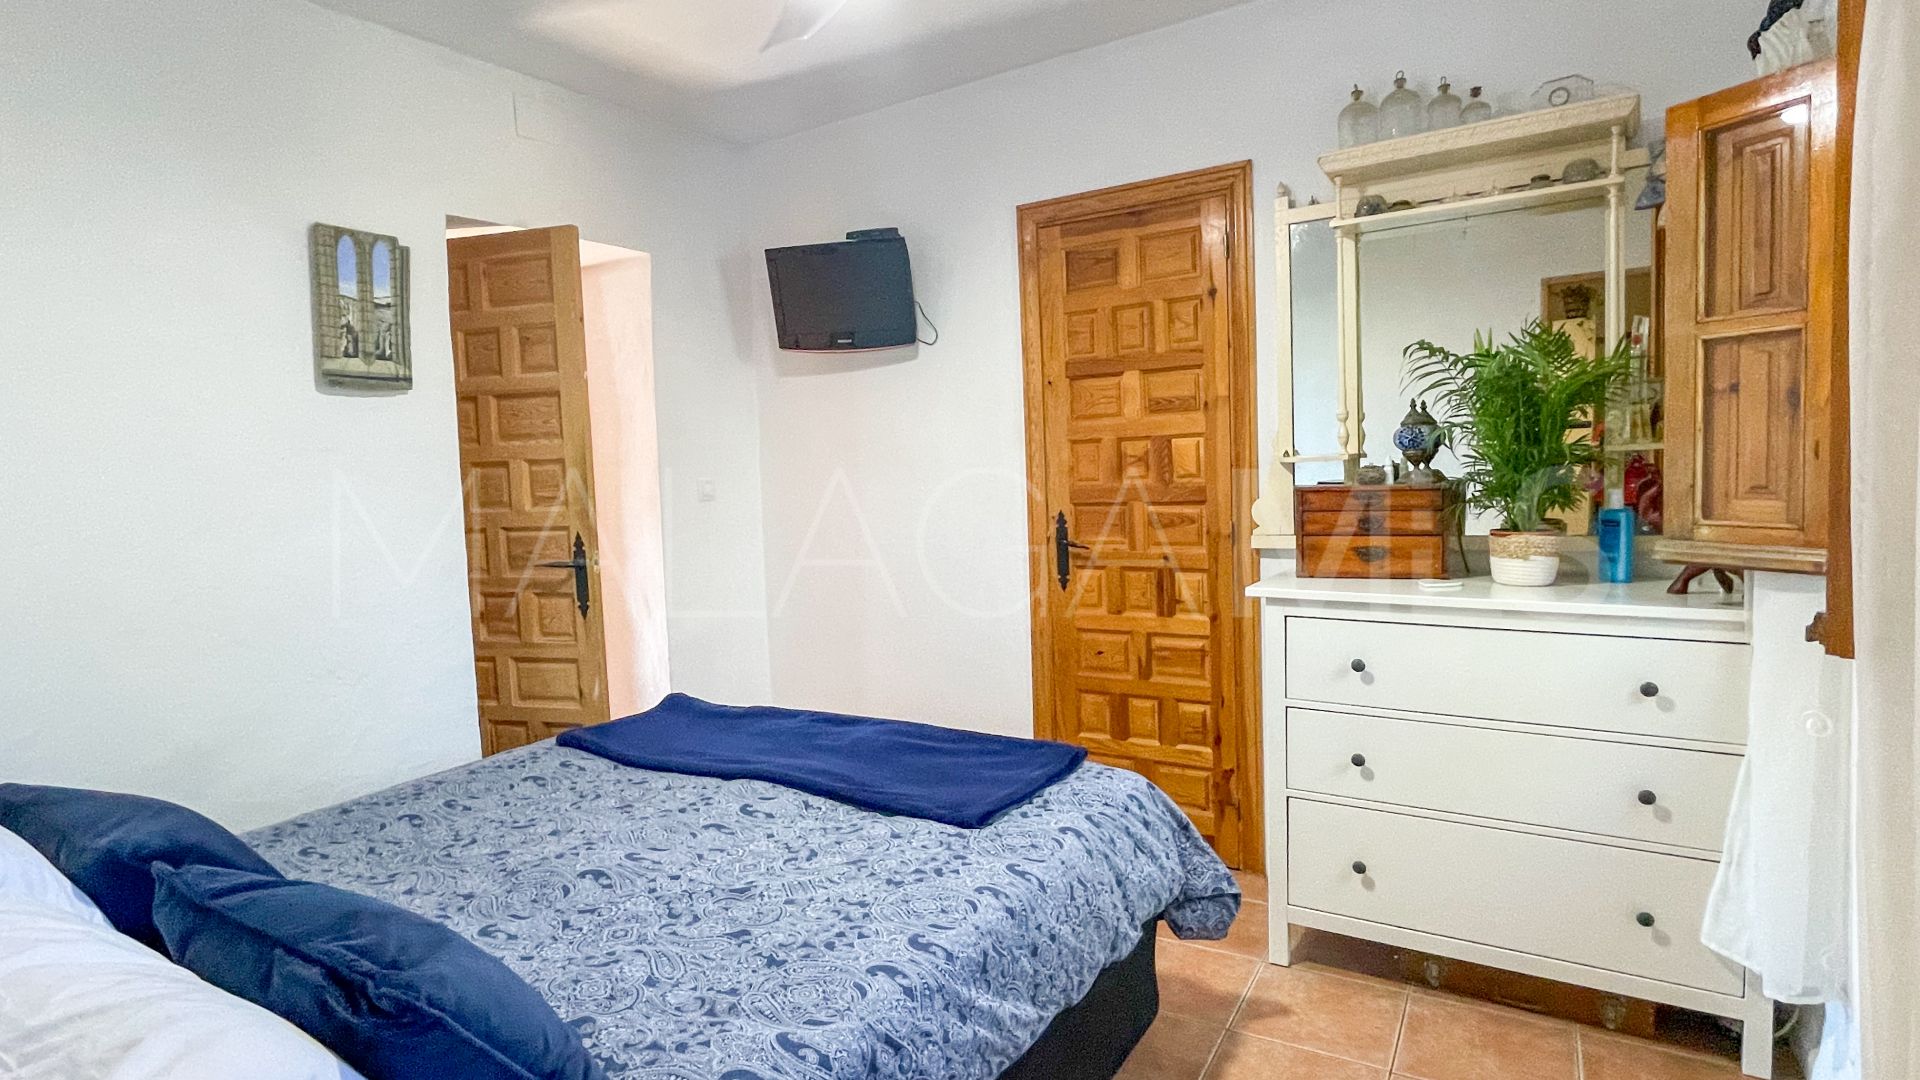 5 bedrooms country house in Villanueva de la Concepción for sale